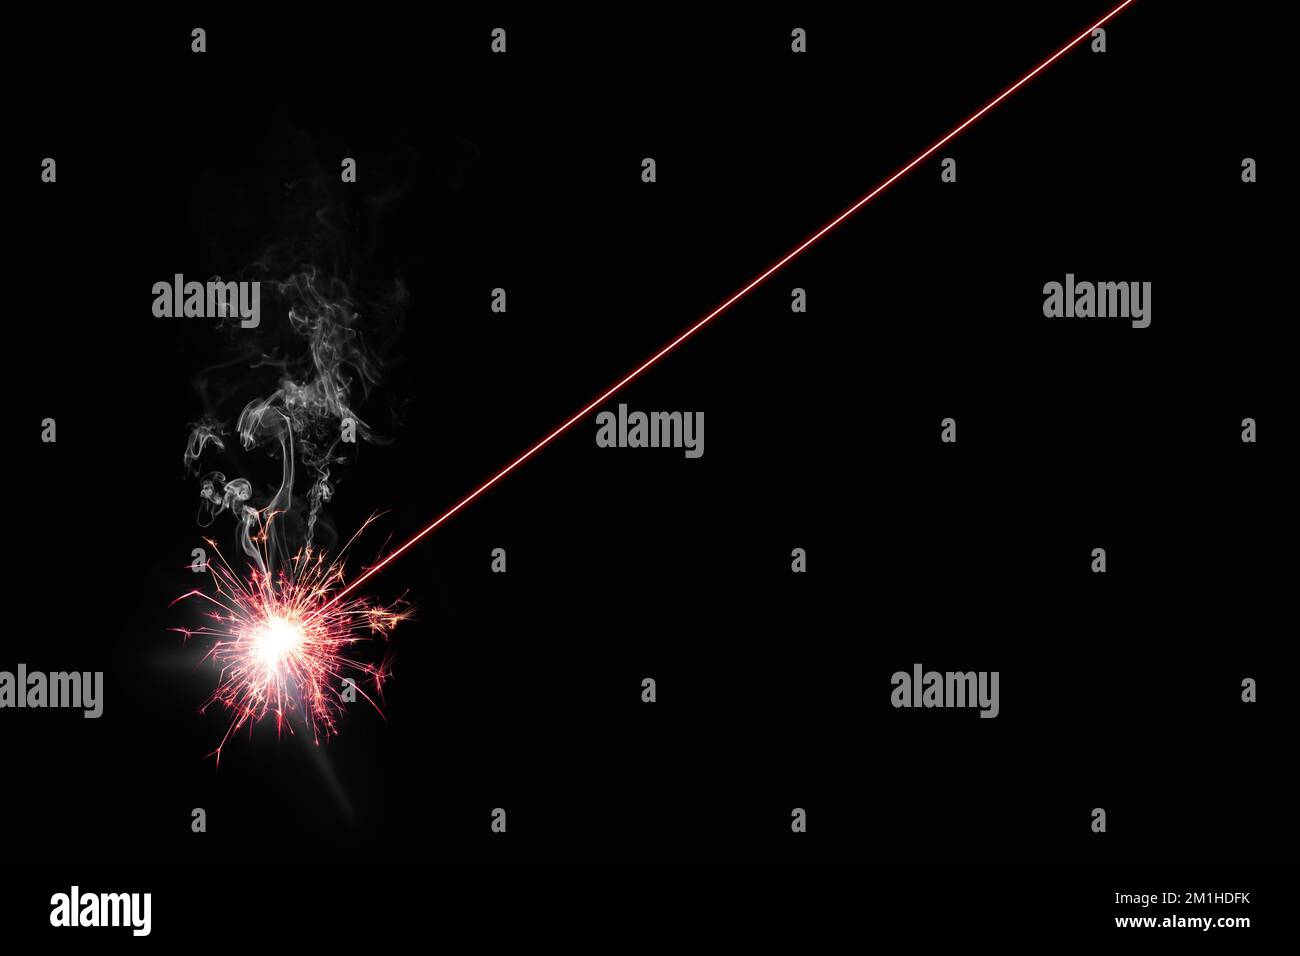 Roter Laser brennt etwas - schwarzer Hintergrund - Abbildung Stockfoto